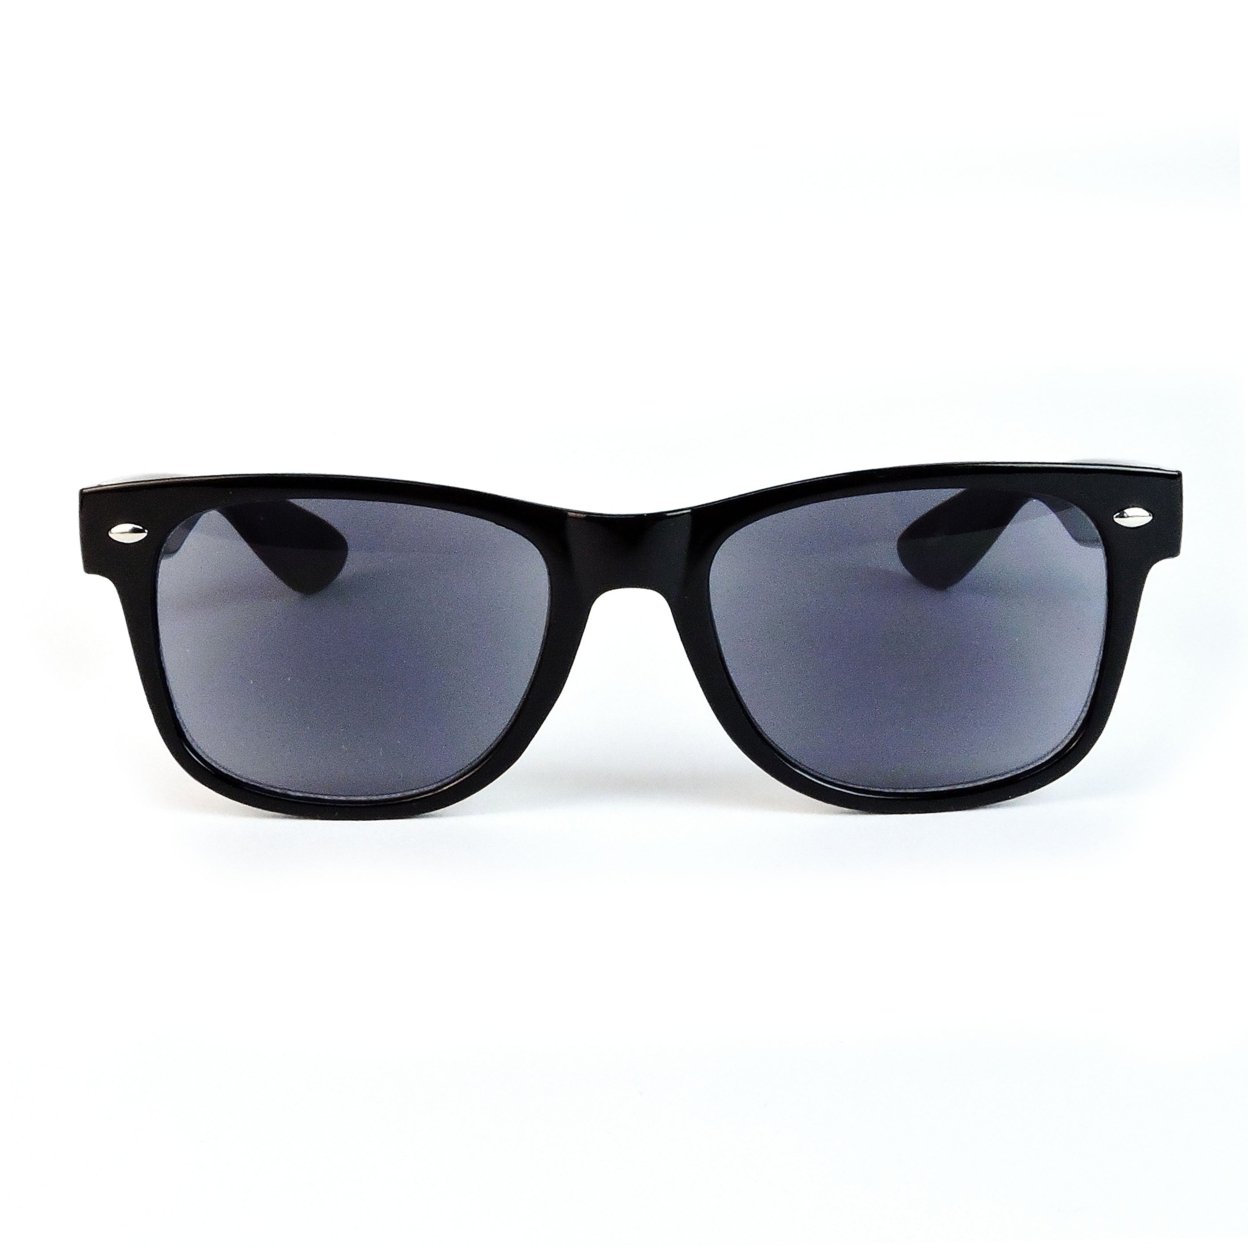 Sun Readers Full Lens Classic Frame 80's Retro Style Reading Sunglasses - Tortoise, +2.00